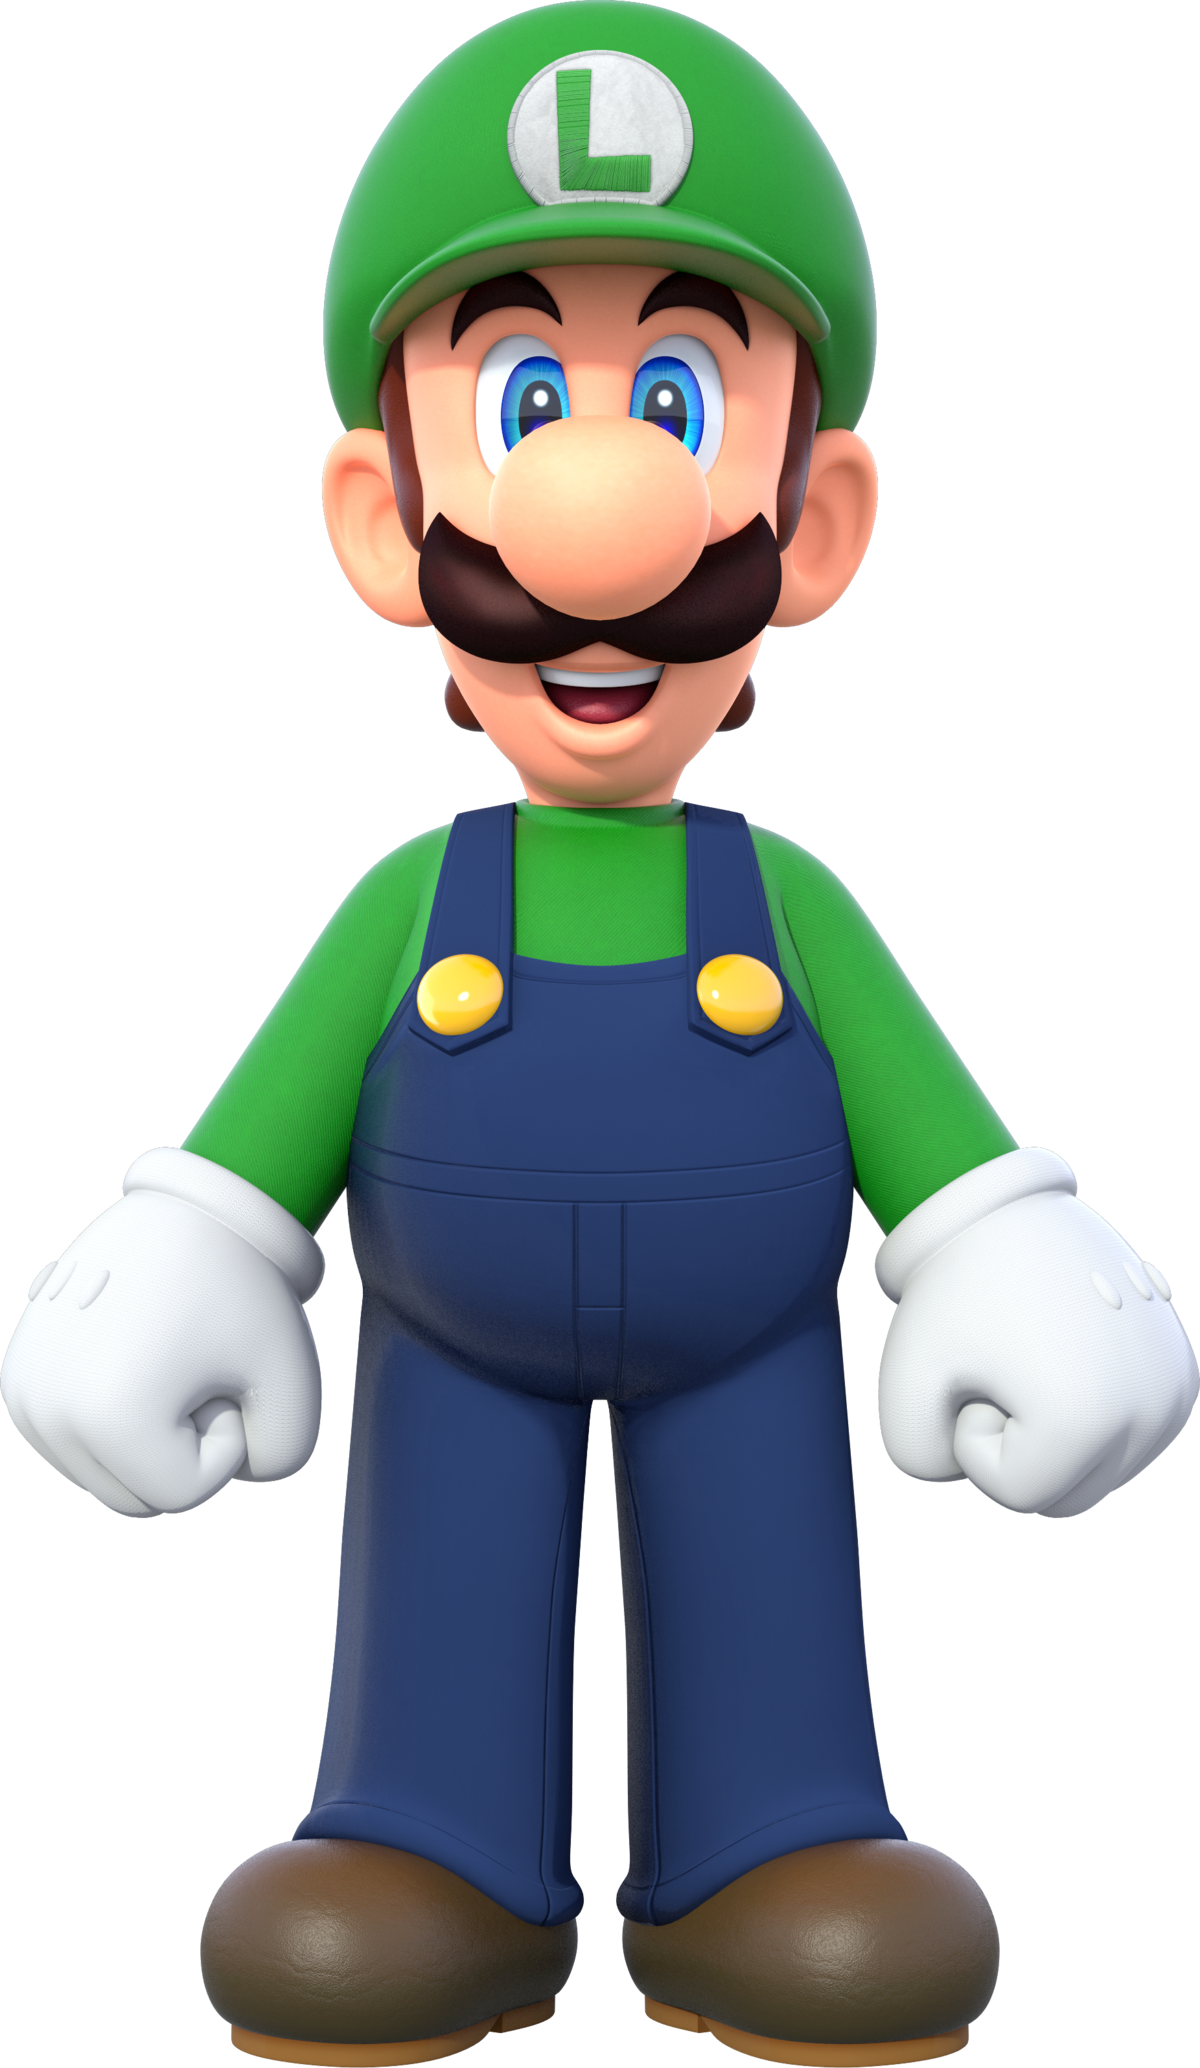 Luigi Super Mario Wiki The Mario Encyclopedia